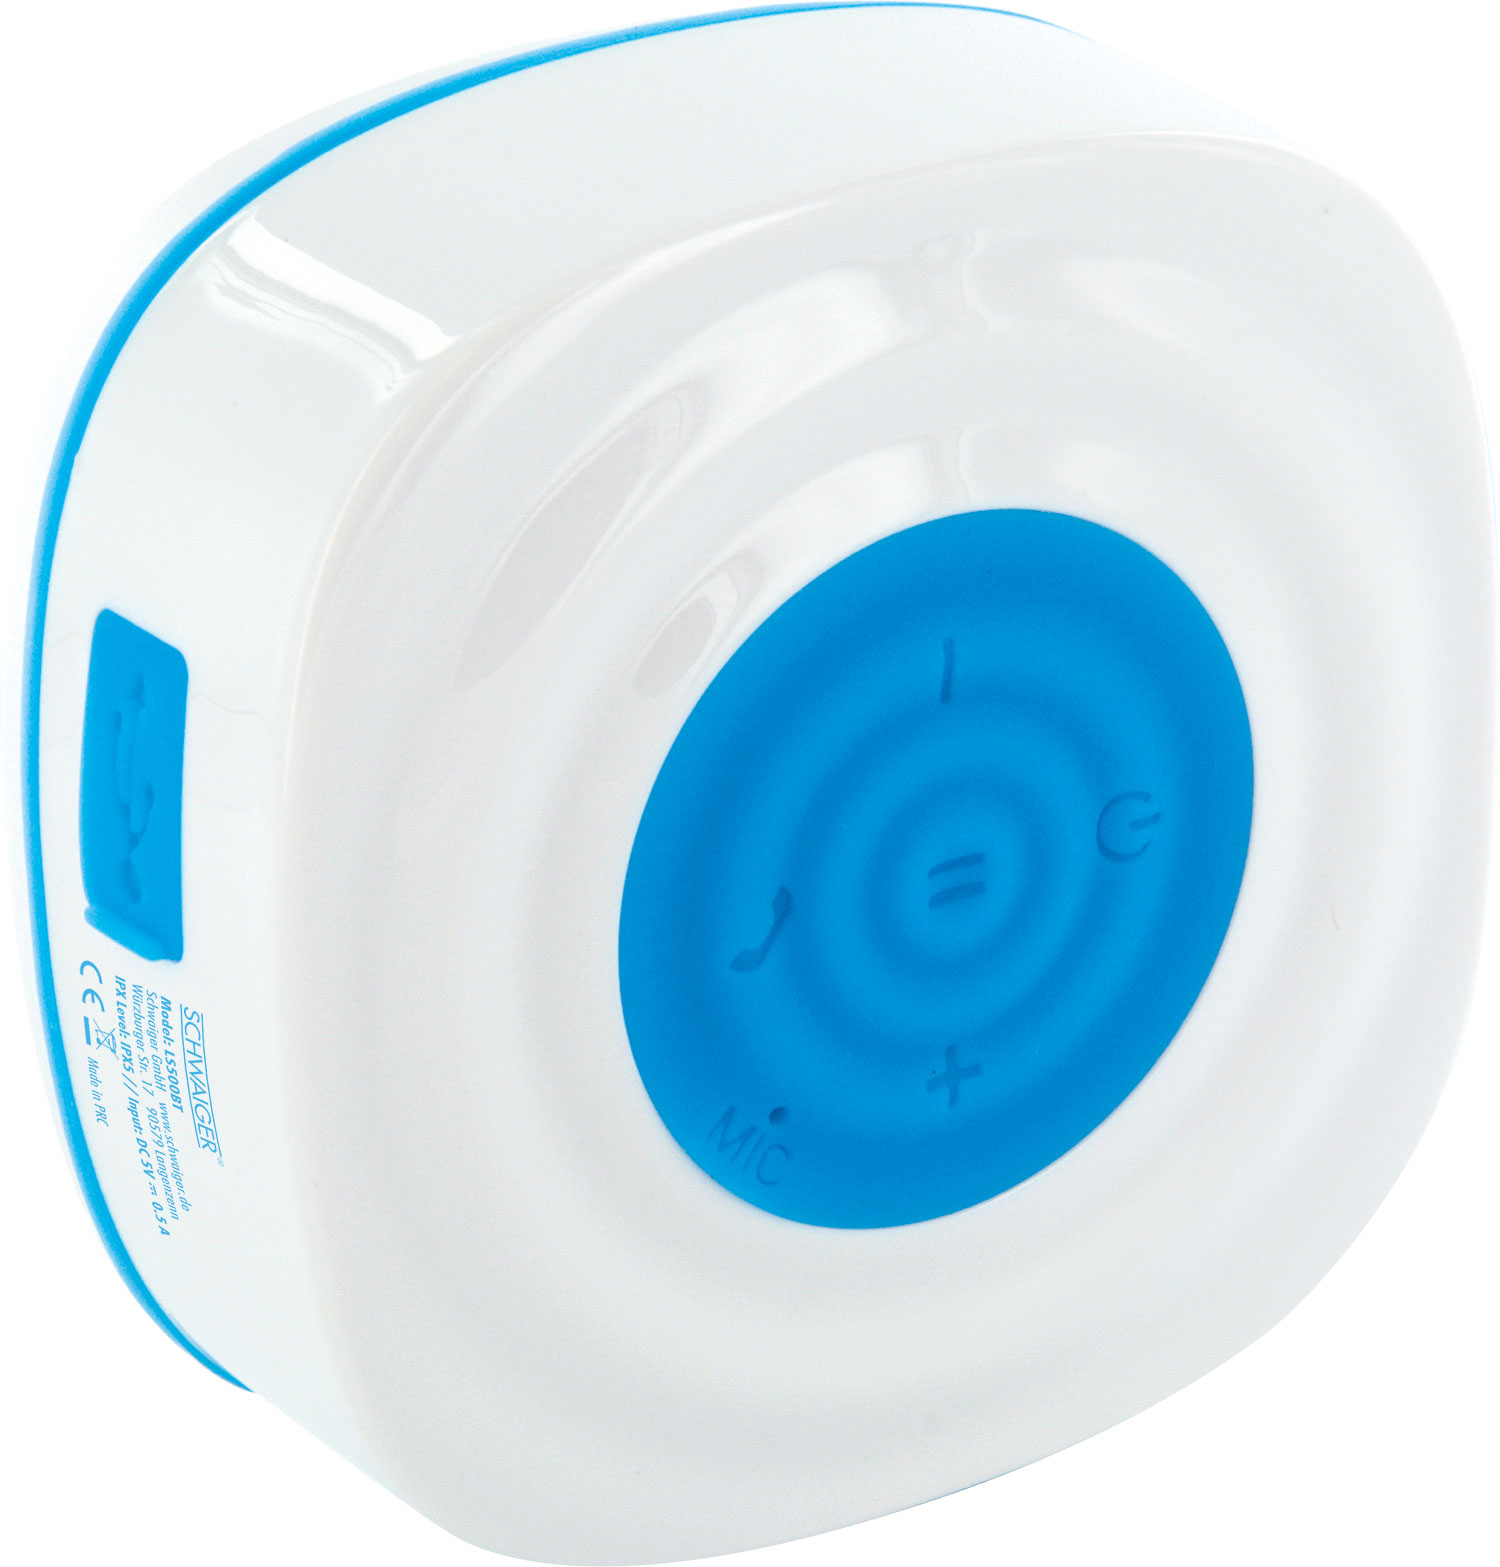 -LS500BT Saugnapf SCHWAIGER (Boombox, 512- mit Bluetooth® Lautsprecher Blau/Weiß)